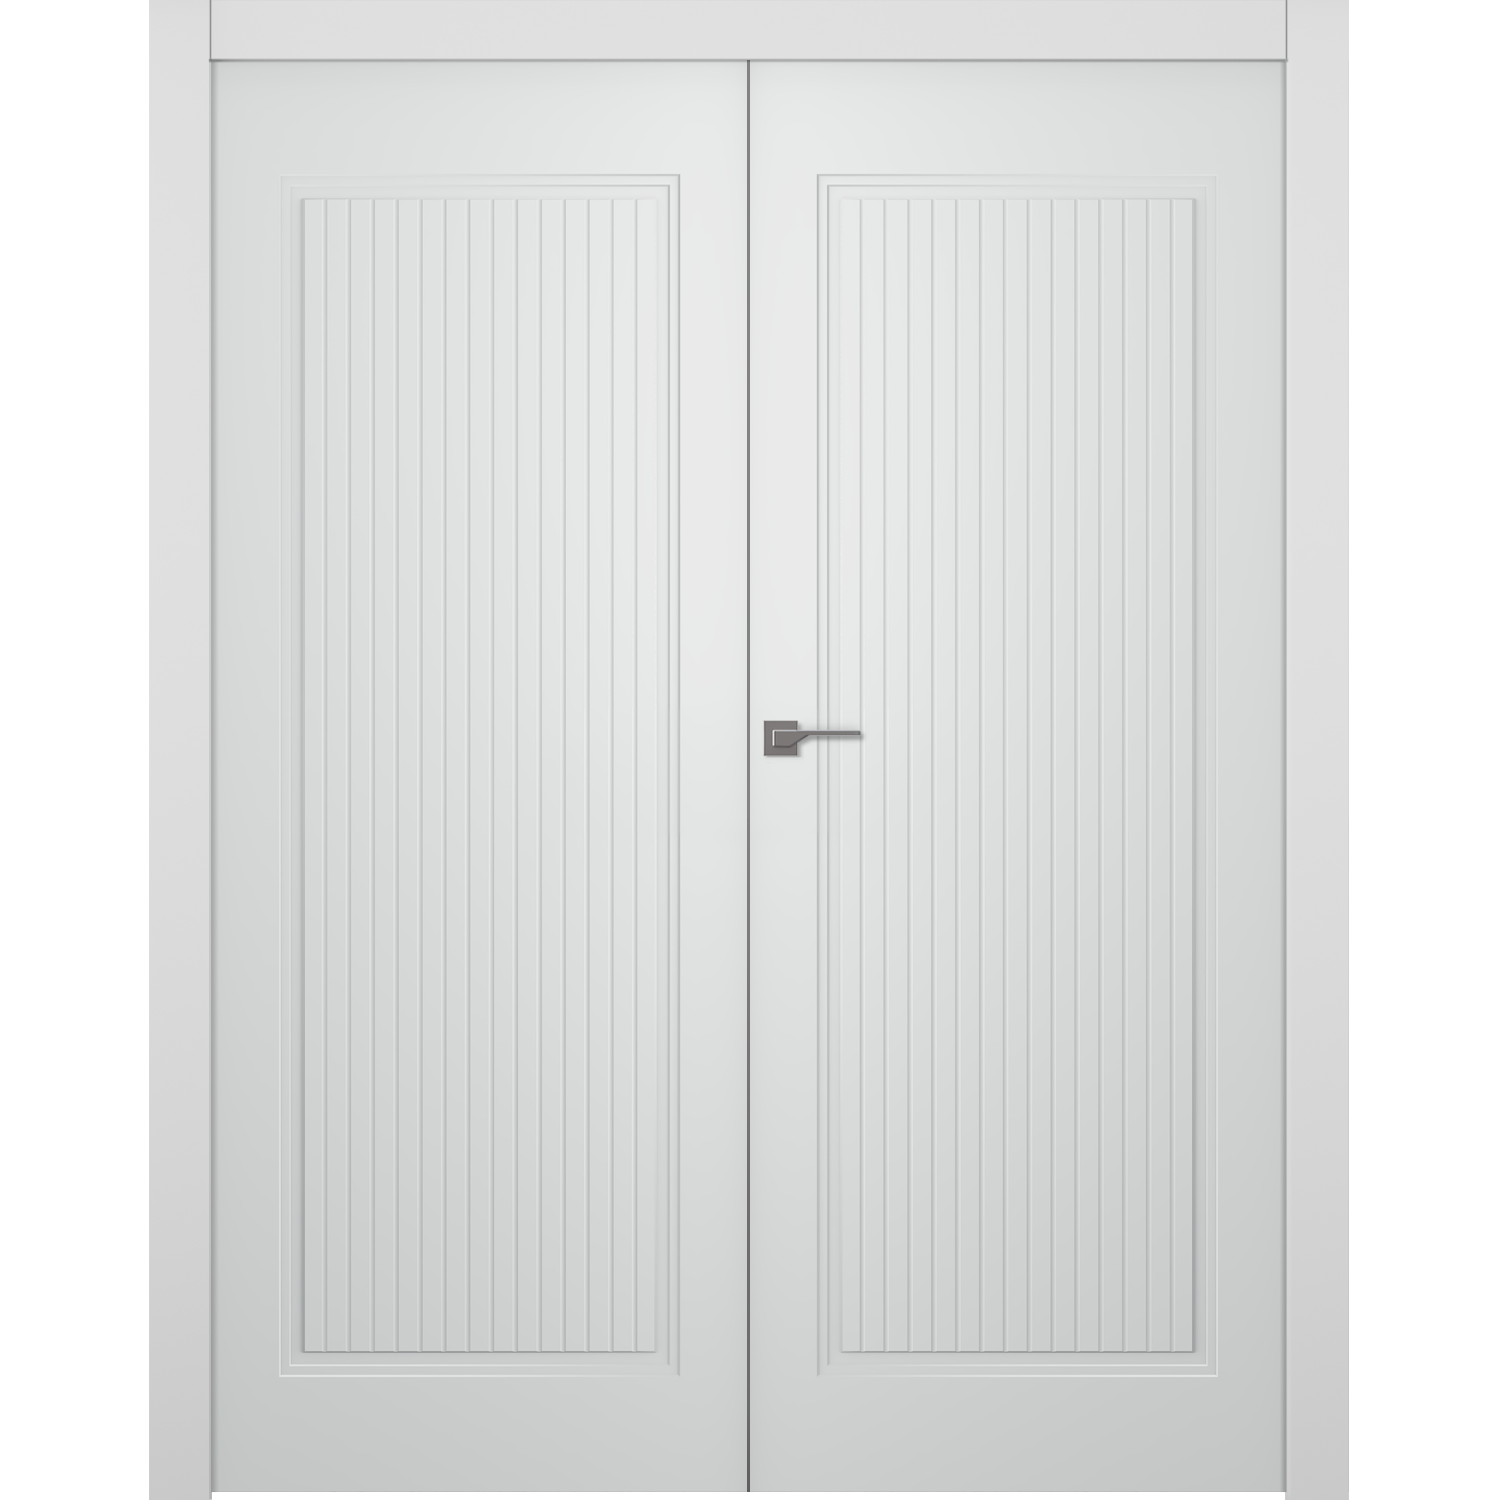 Дверное Полотно Пвдгщ "Белла 1" Эмаль Белый 2,0-0,8 Распашная двойная